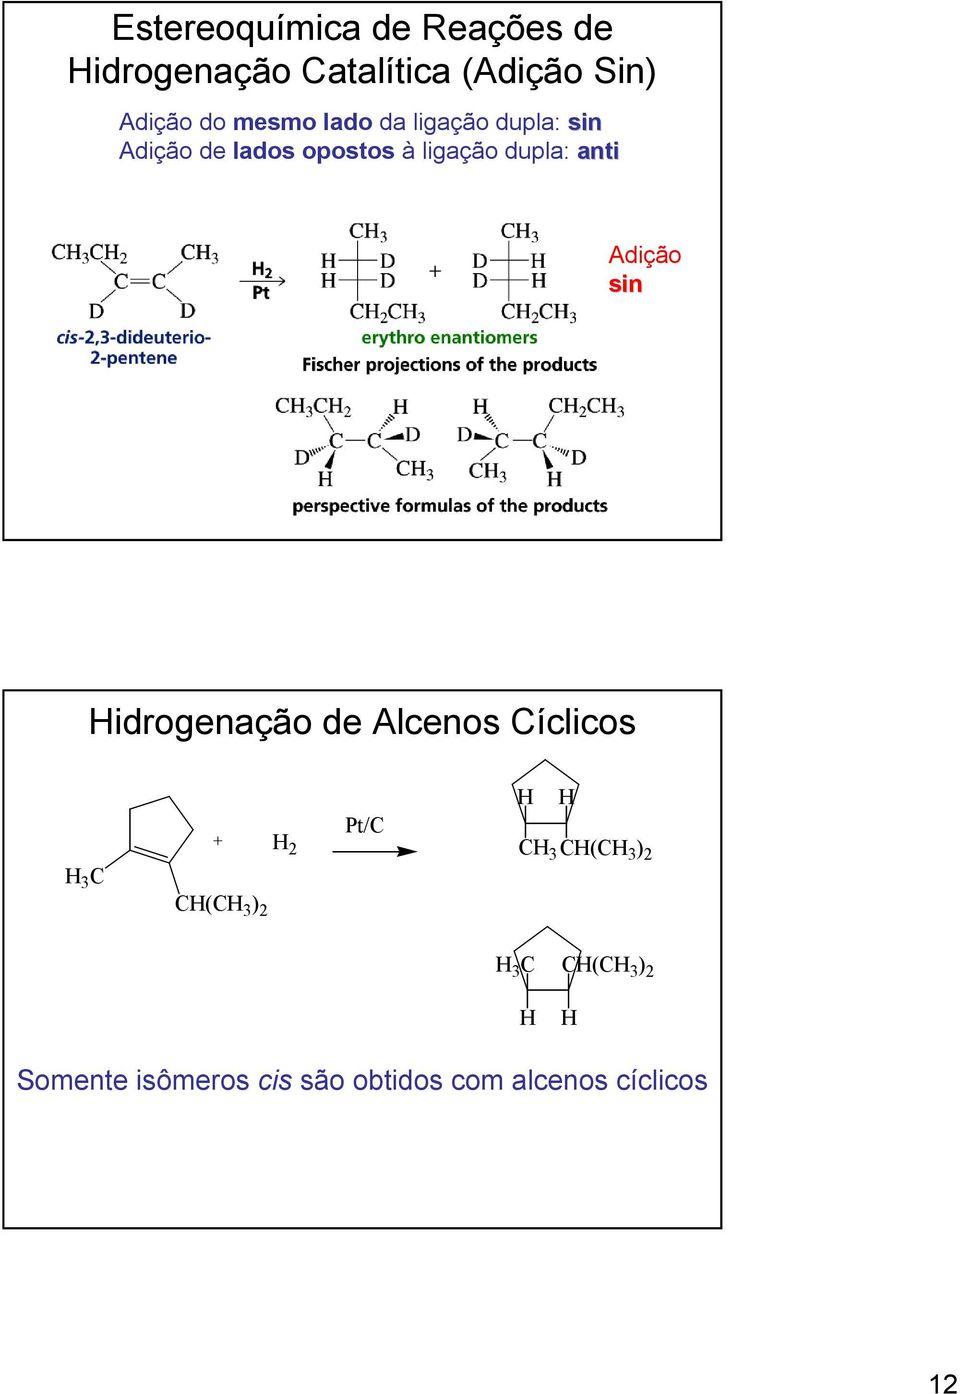 dupla: anti Adição sin idrogenação de Alcenos Cíclicos 3 C + 2 Pt/C C( )